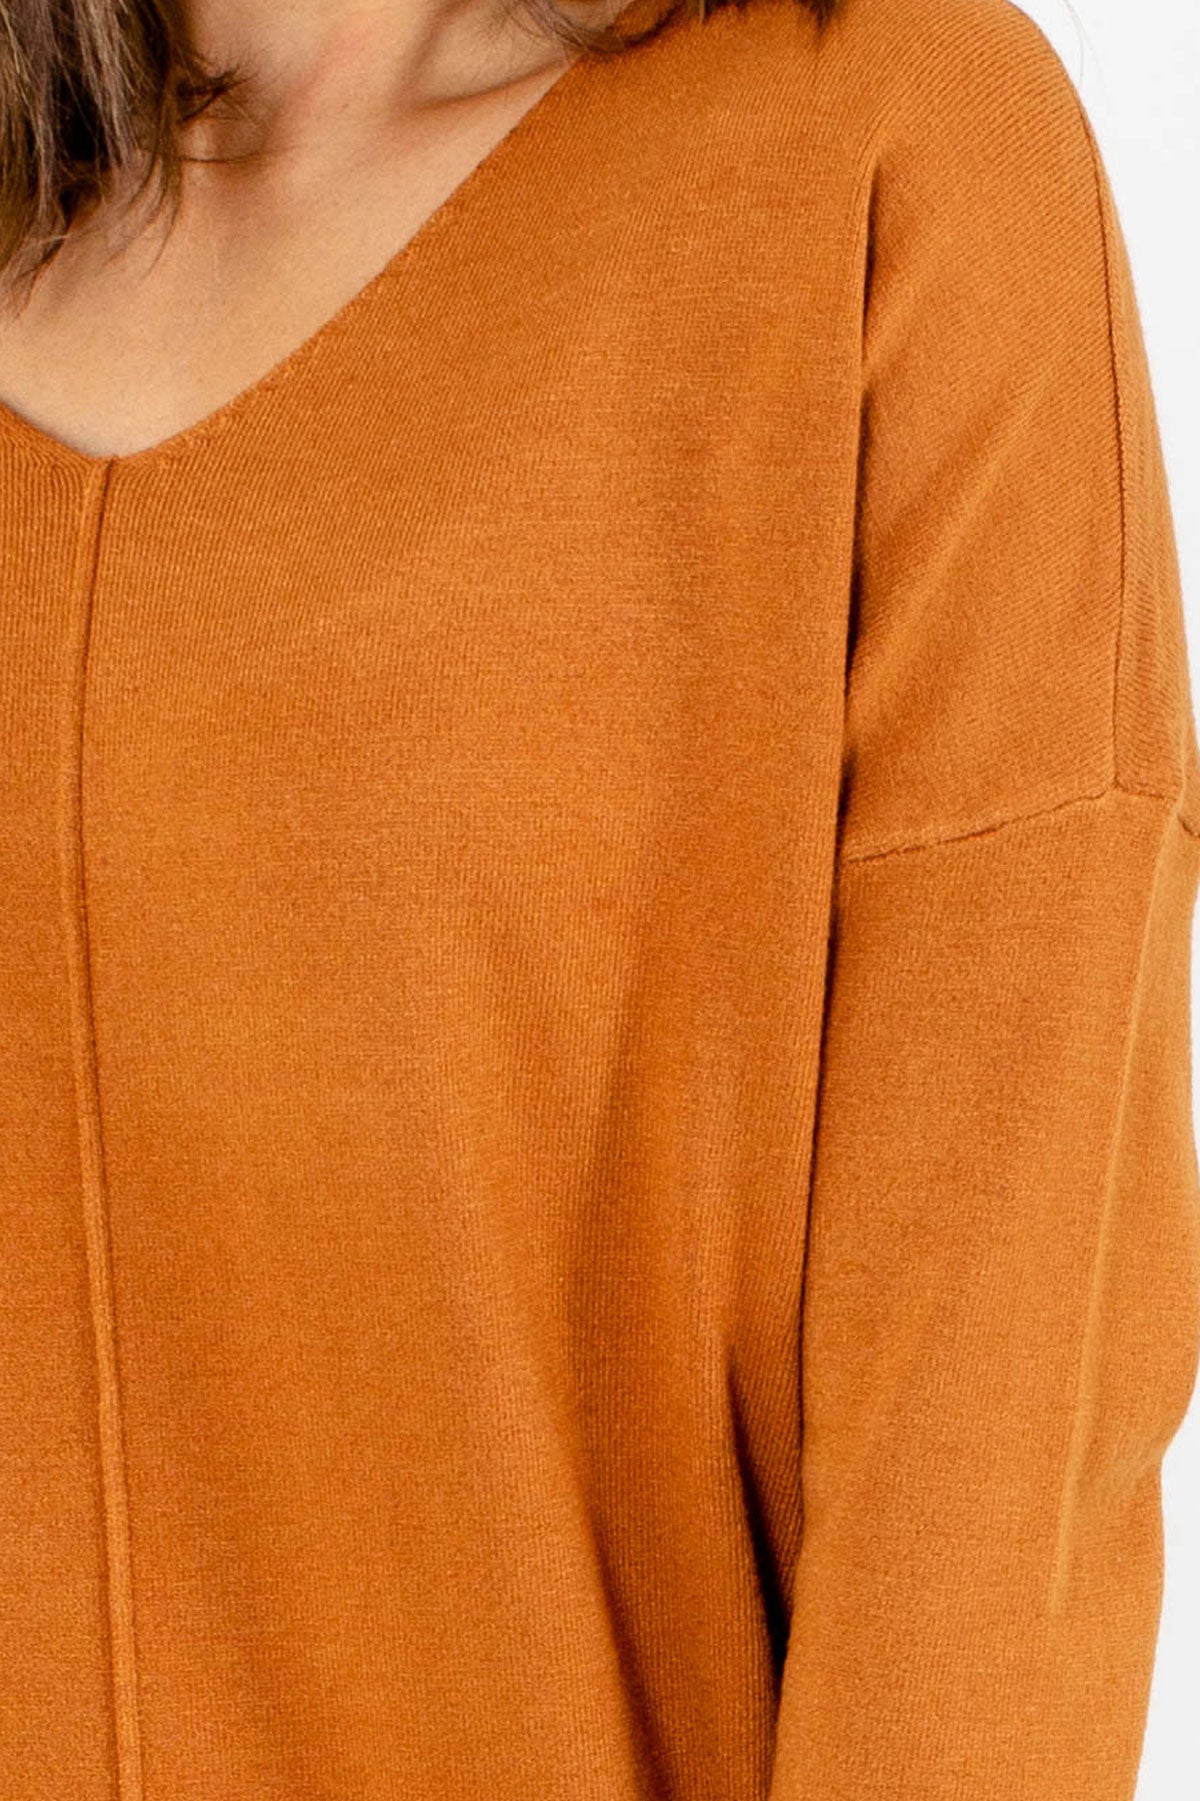 Women's Orange Subtle High-Low Hem Boutique Sweater